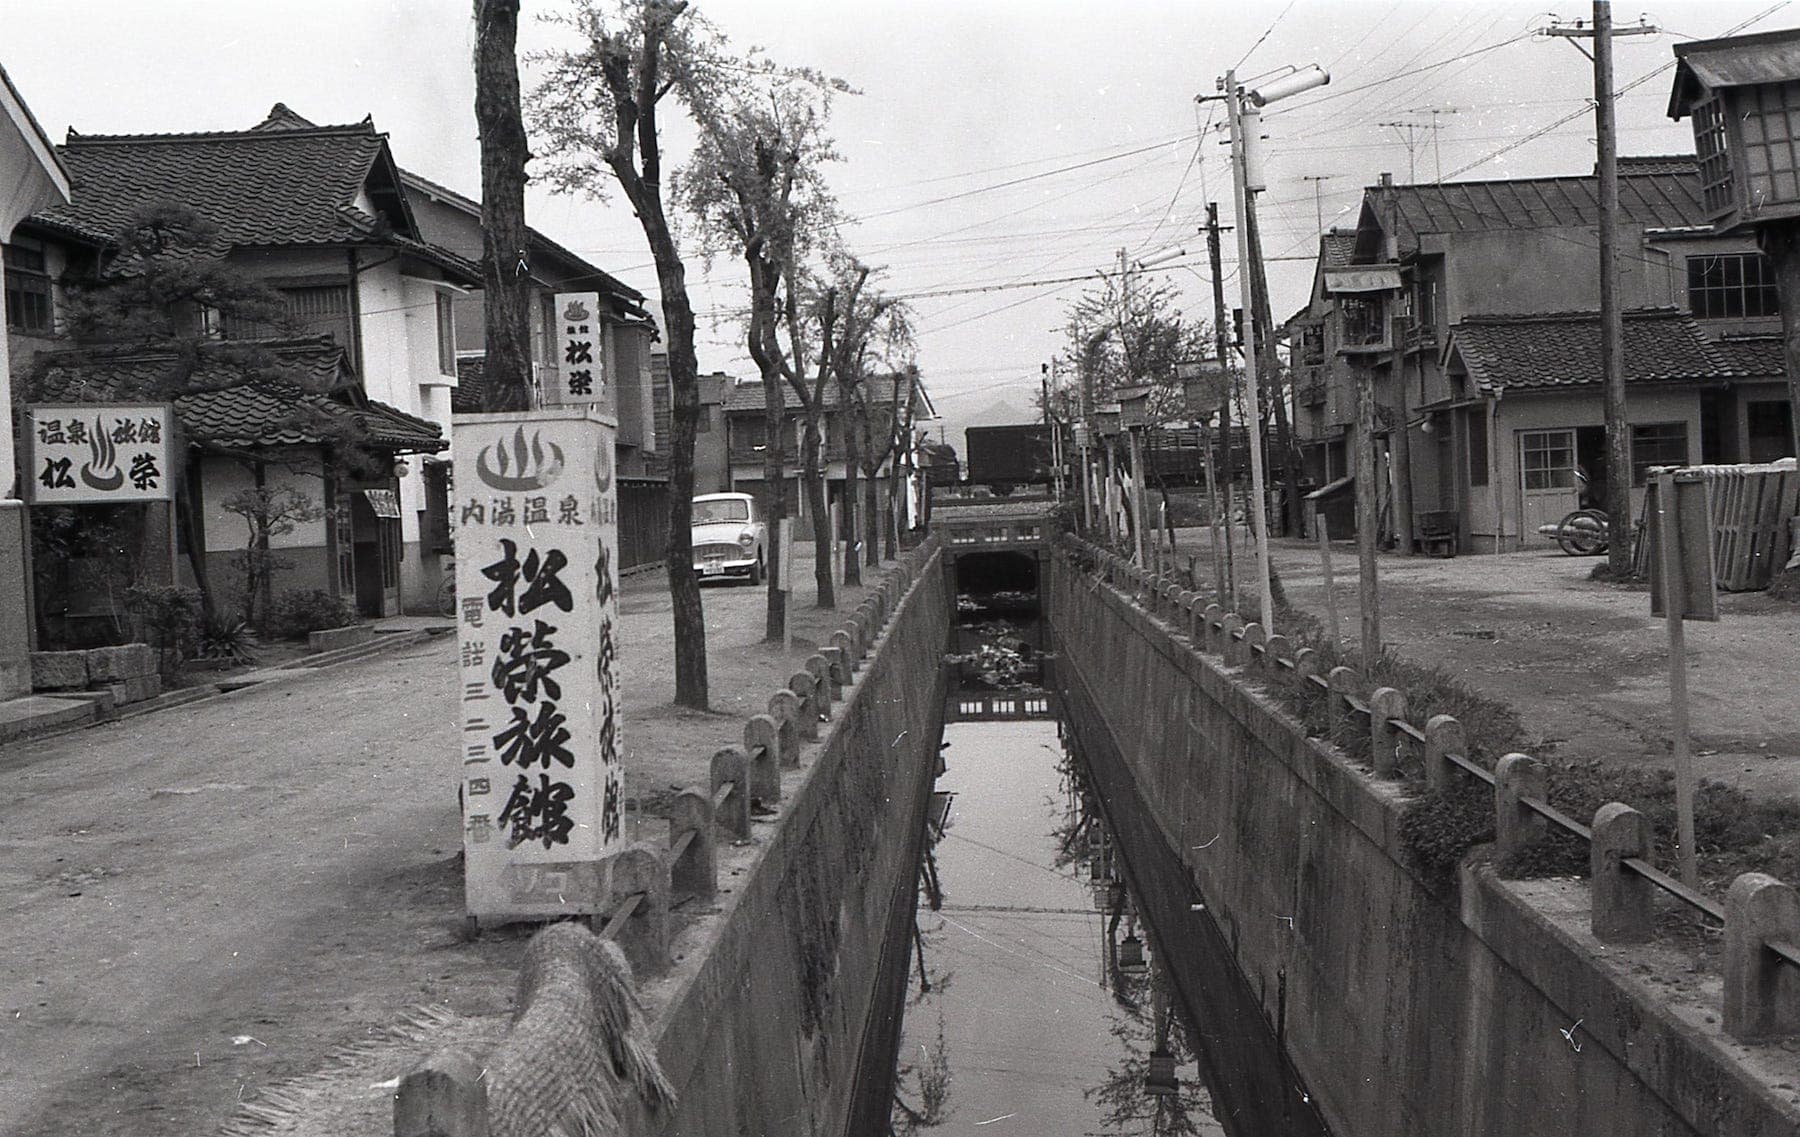 永楽温泉町's image 1